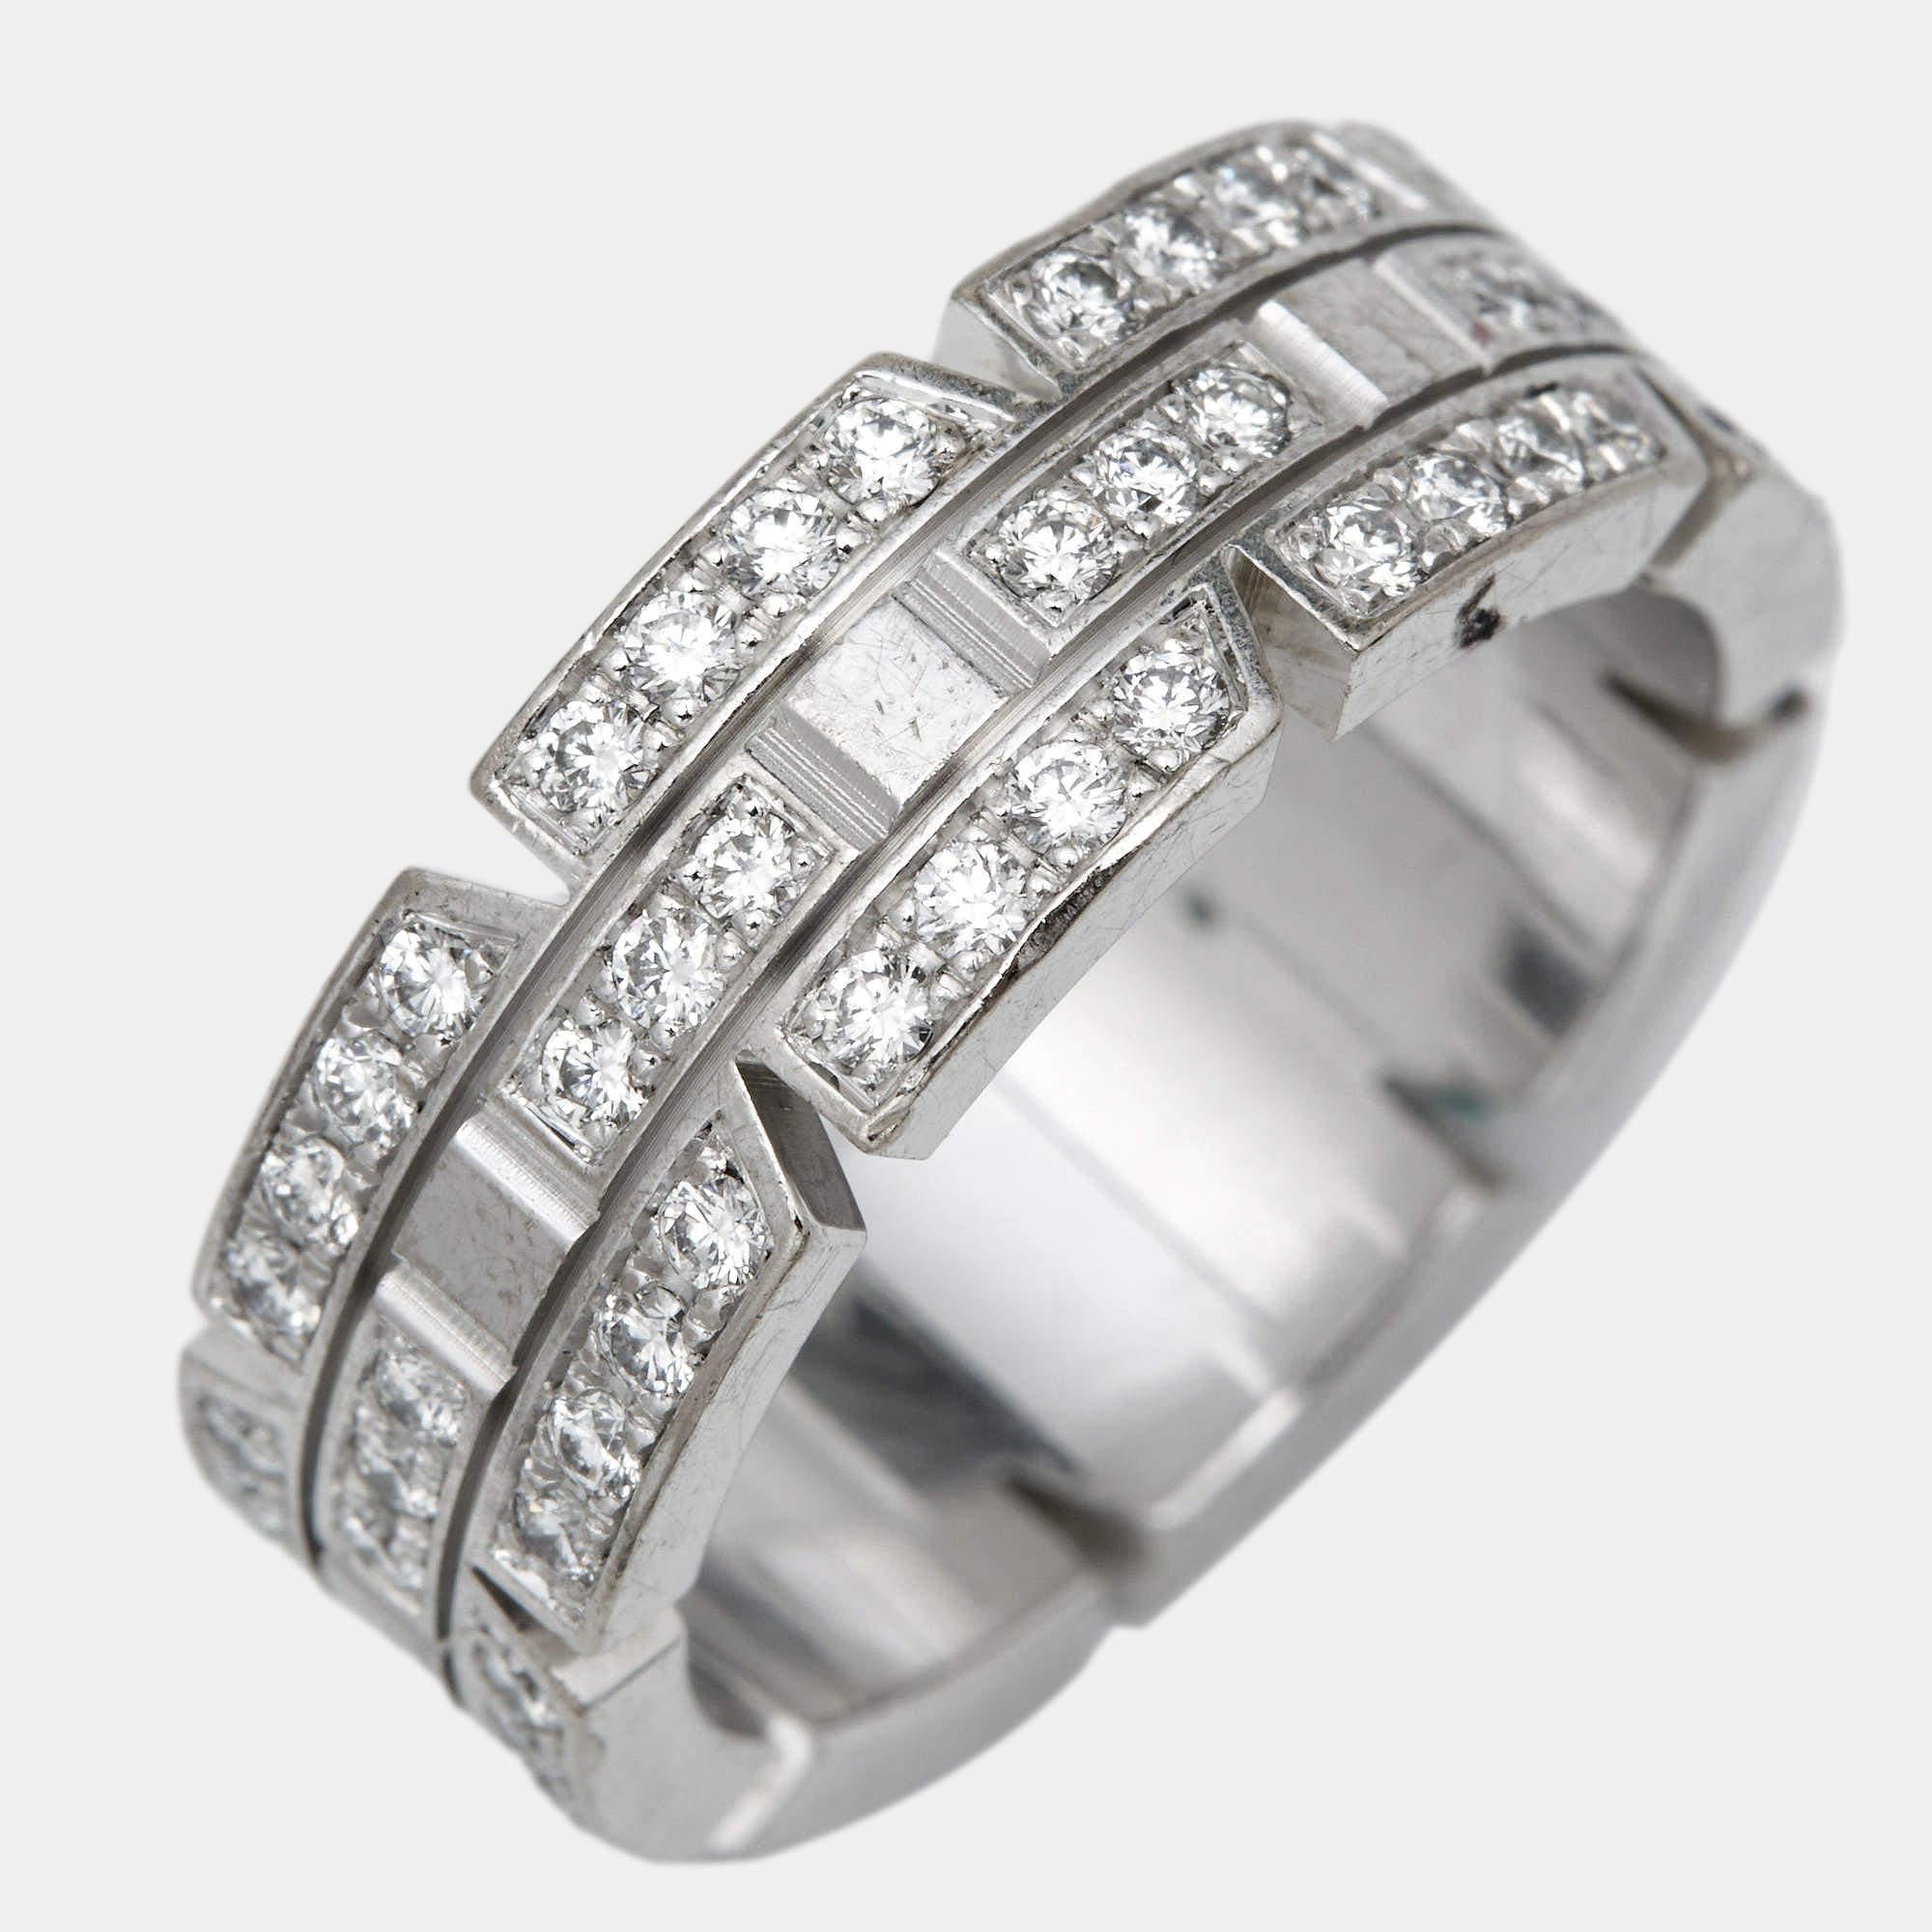 Uncut Cartier Mallion Panthere Diamonds 18k White Gold Ring Size 49